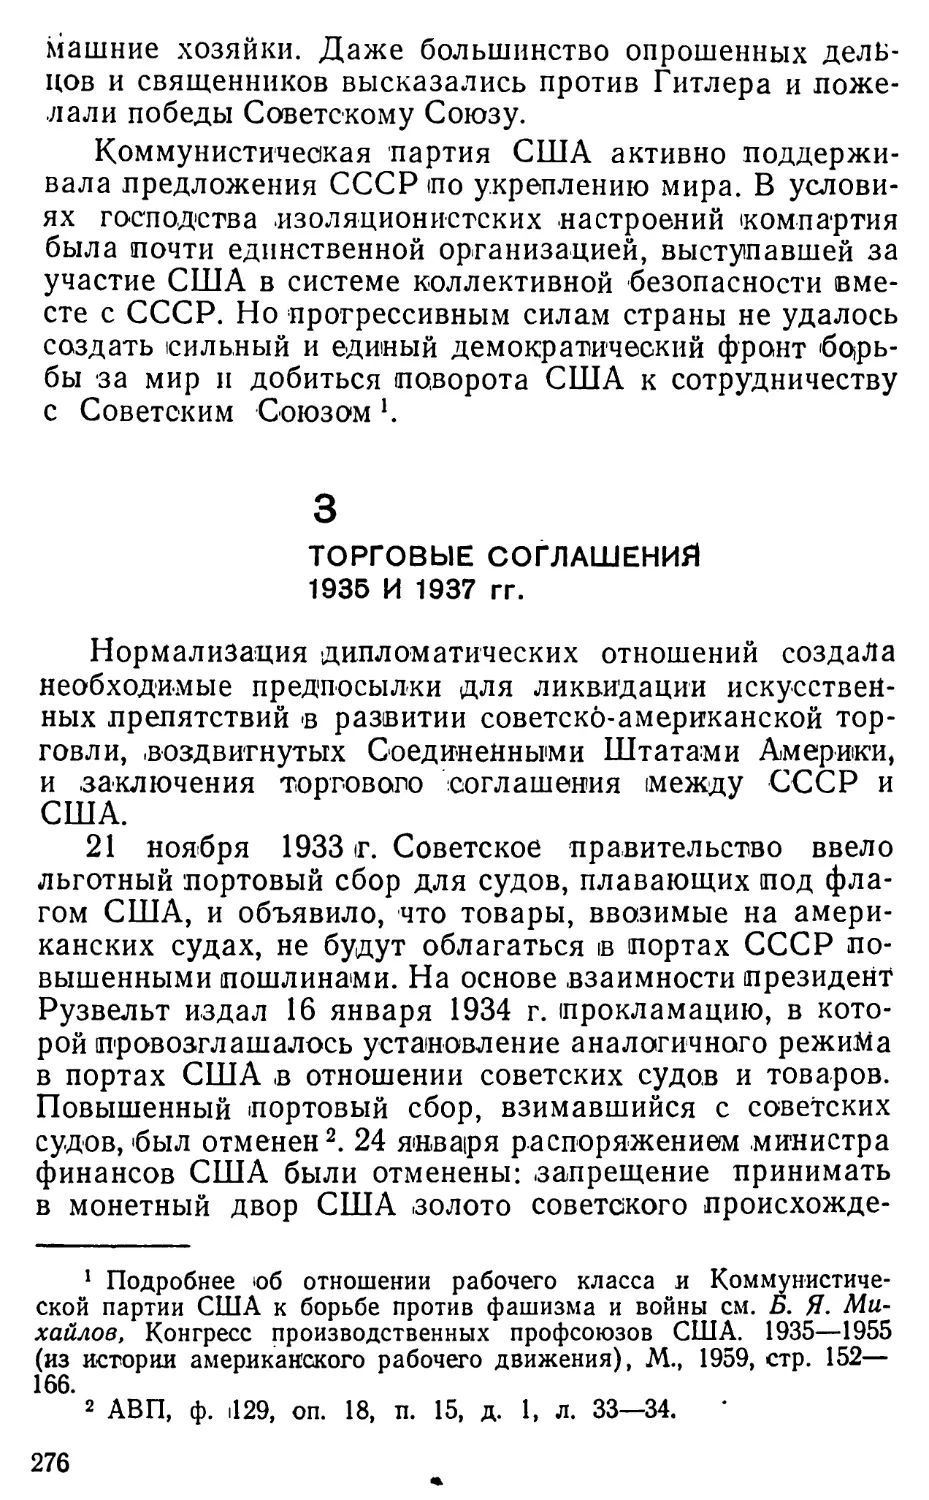 3. Торговые соглашения 1935 и 1937 гг